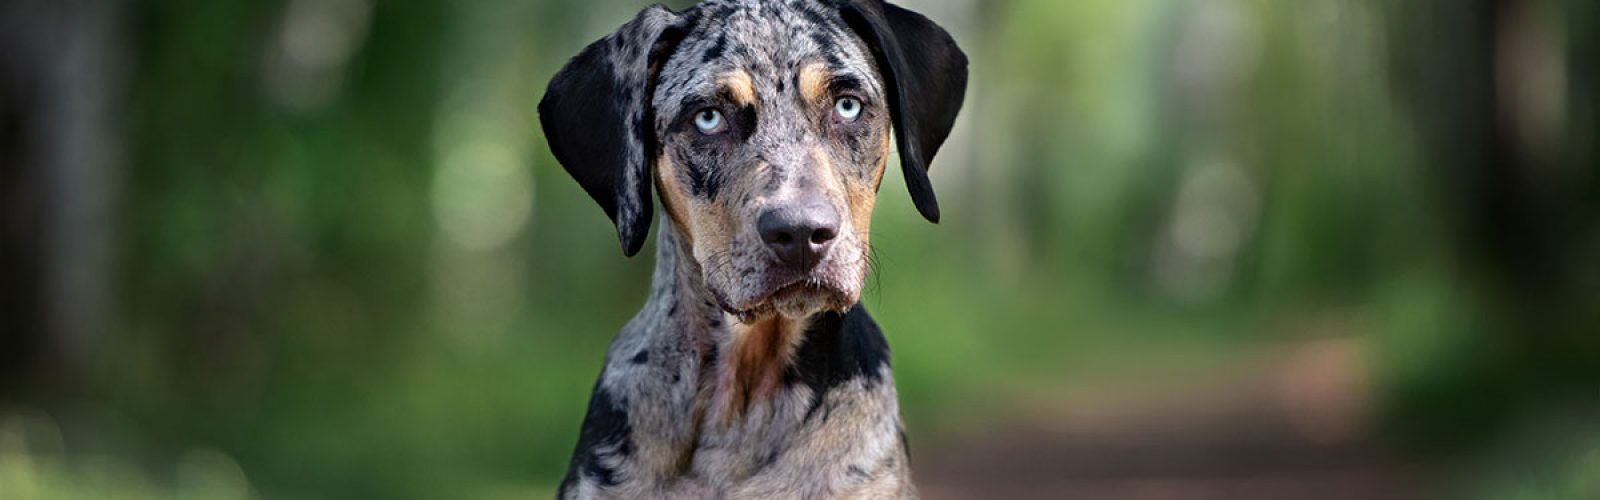 blue-eyed-dog-looking-at-camera